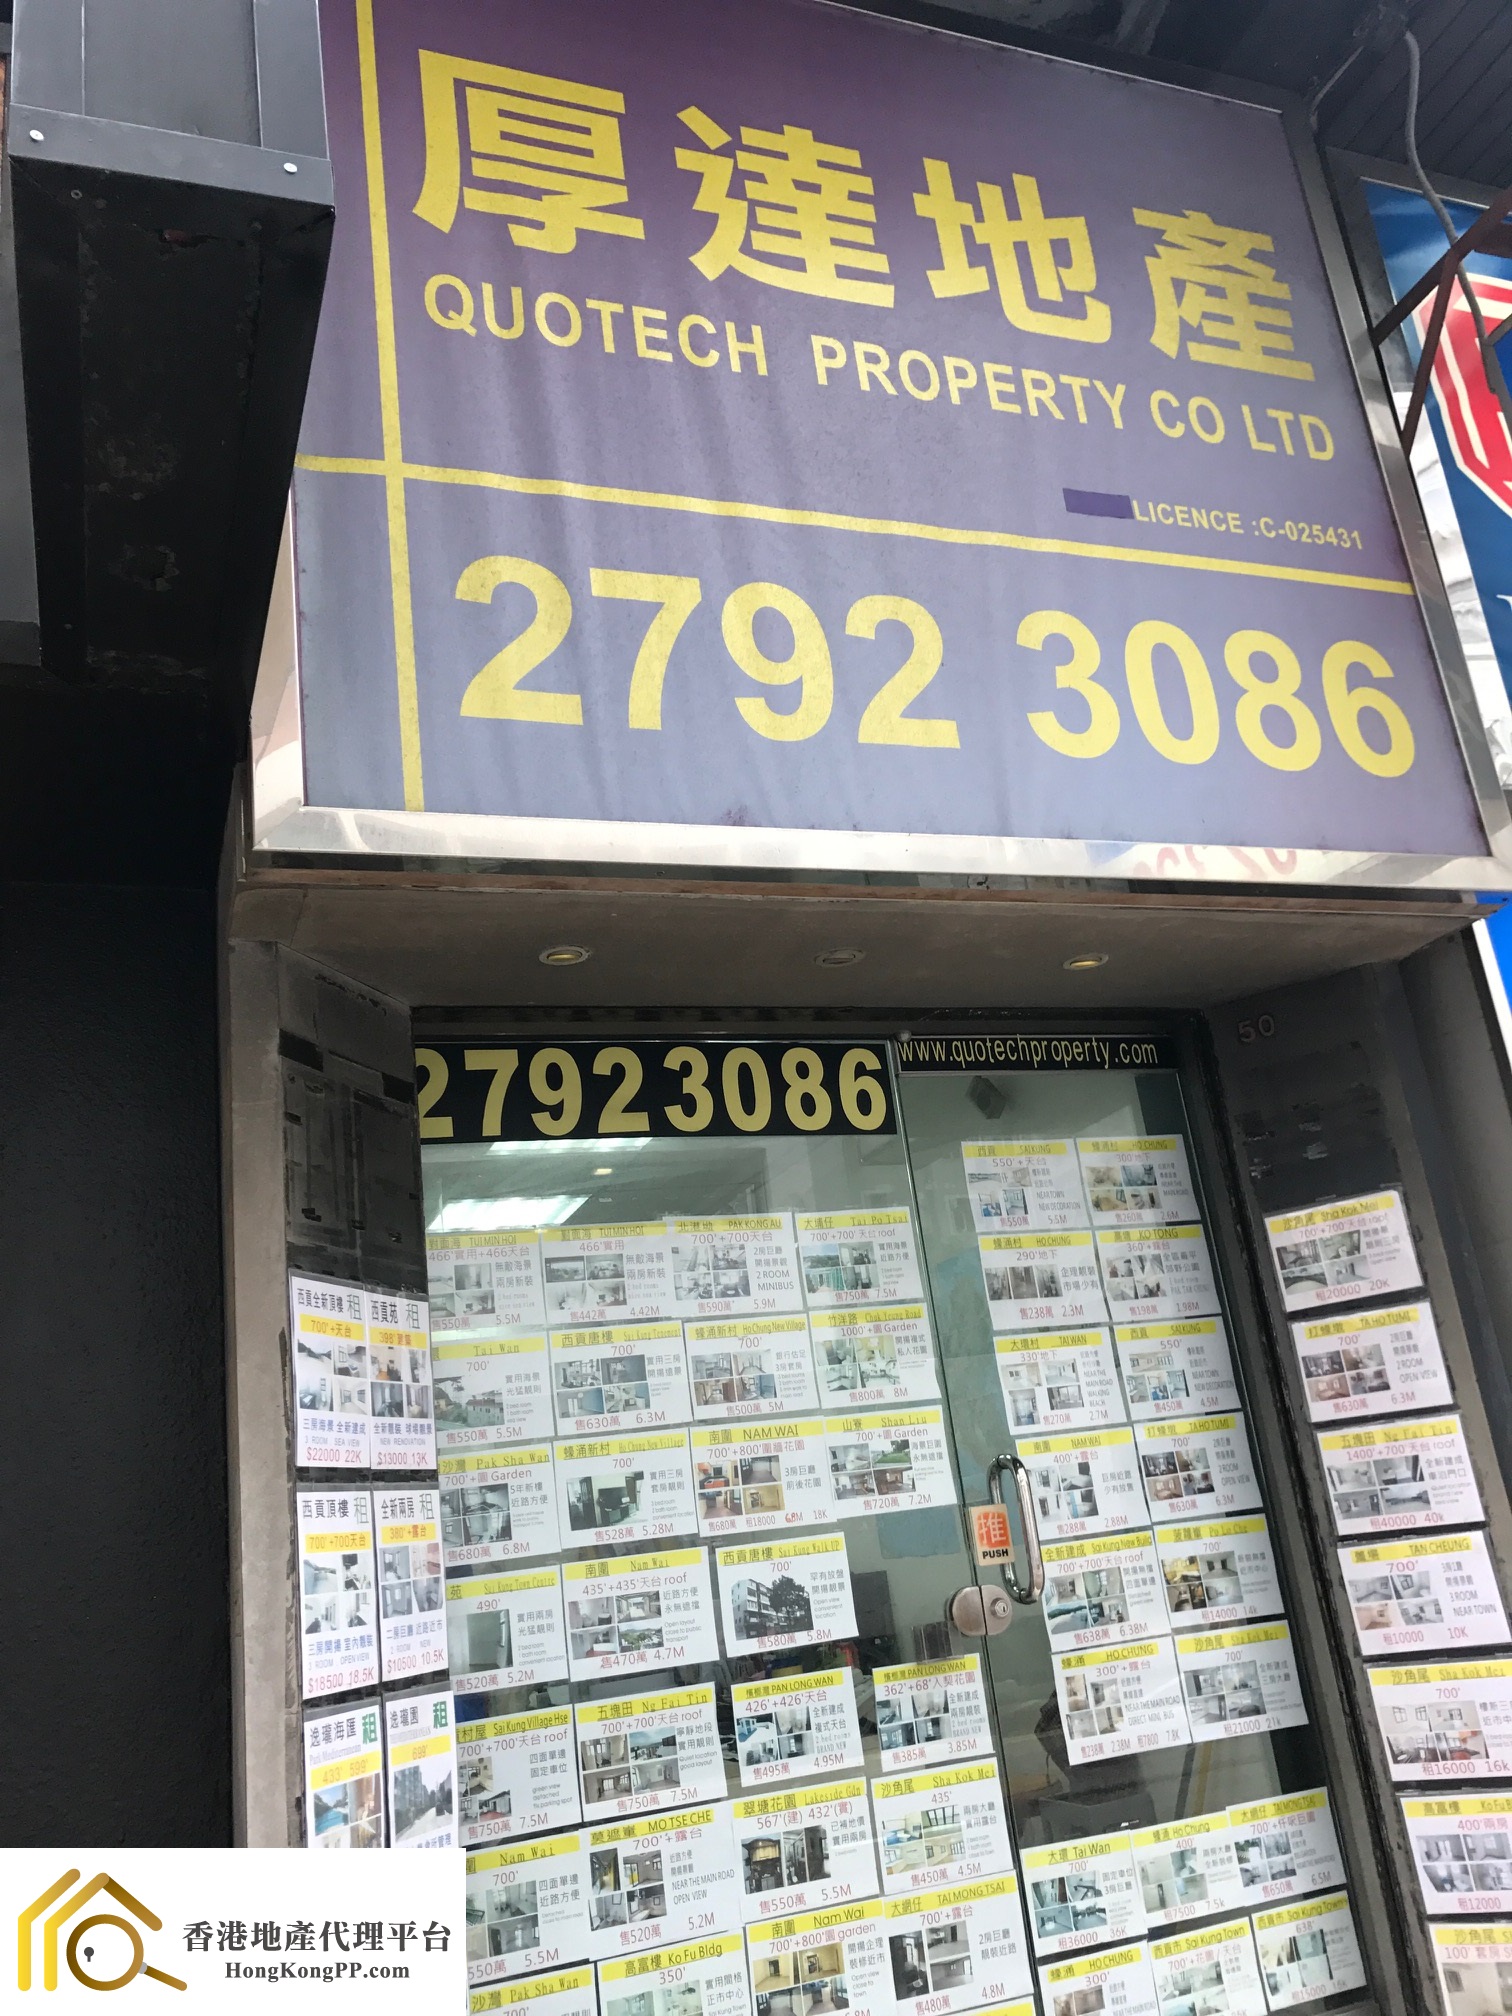 地產代理公司 Estate Agent: 厚達地產 Quotech Property